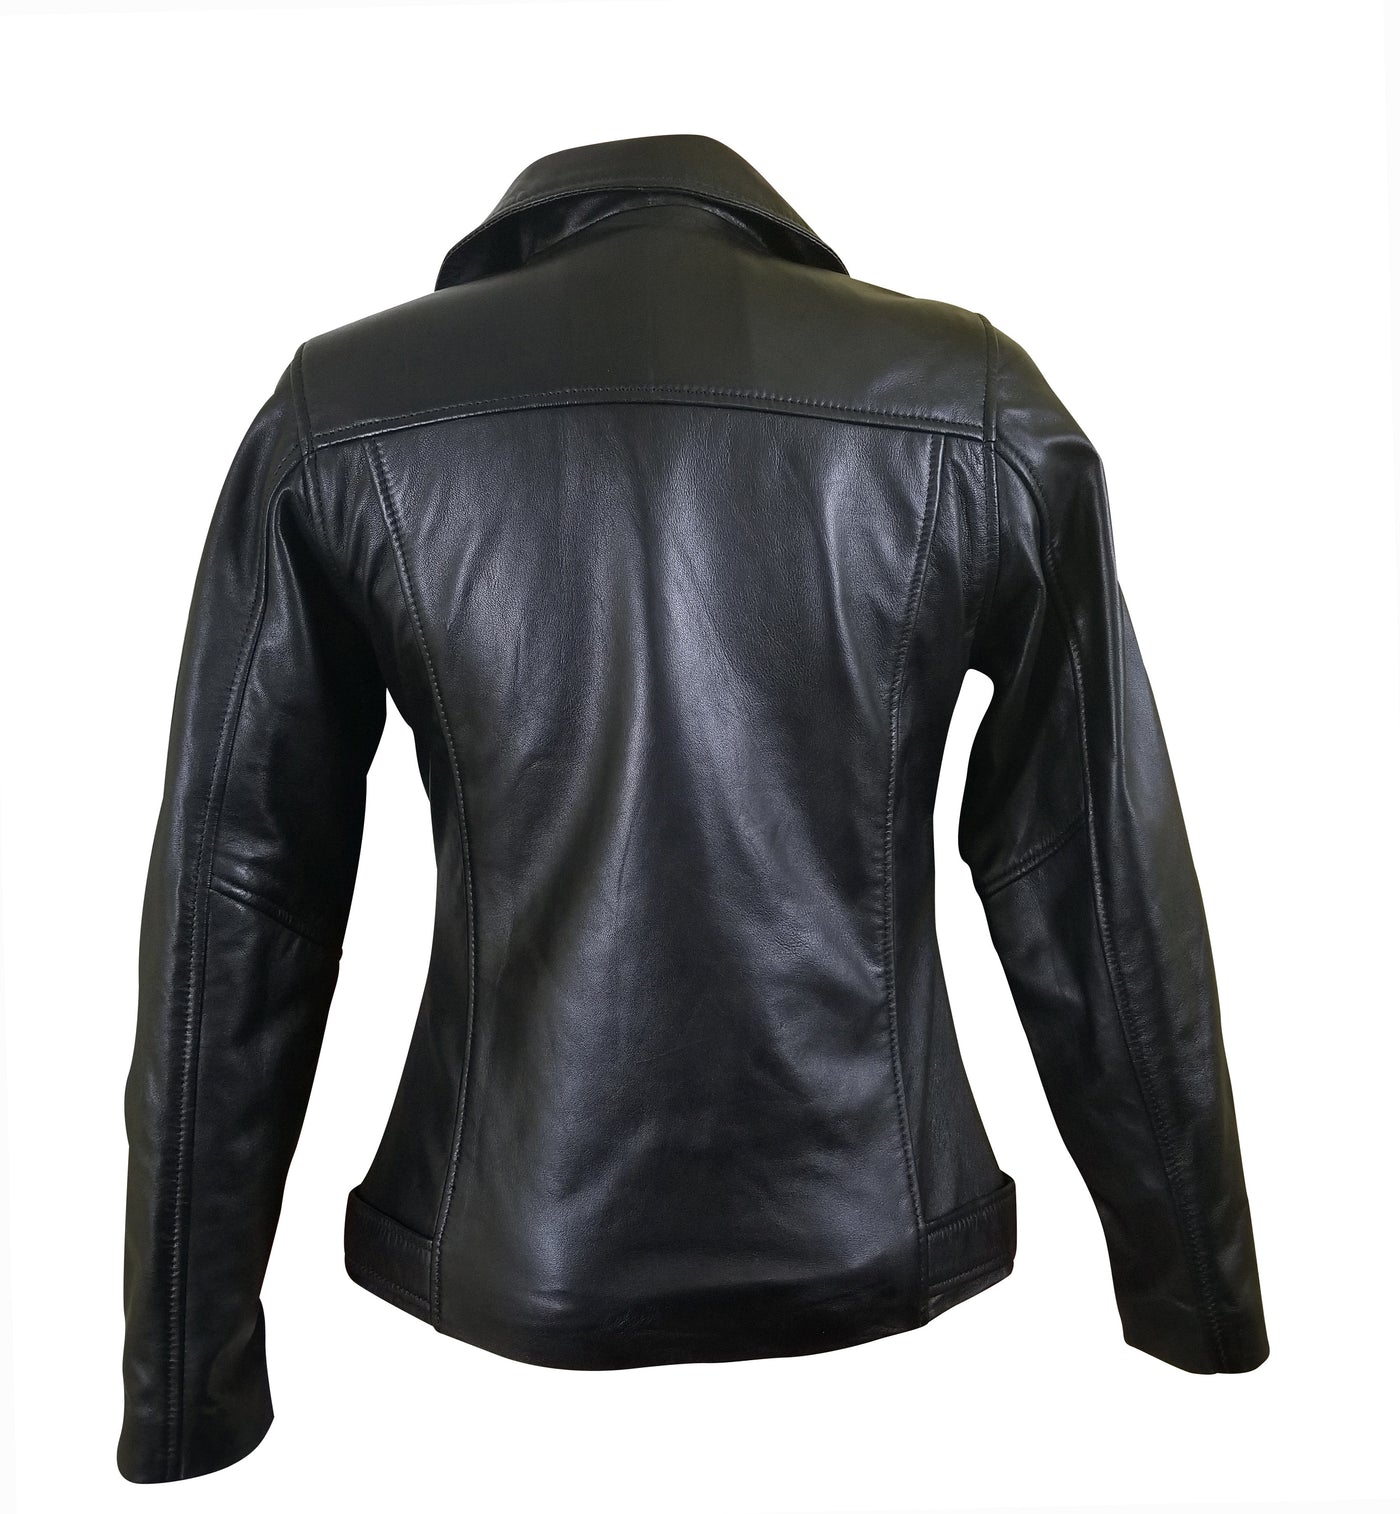 Style Waist Belt Emilie's Black Leather Jacket